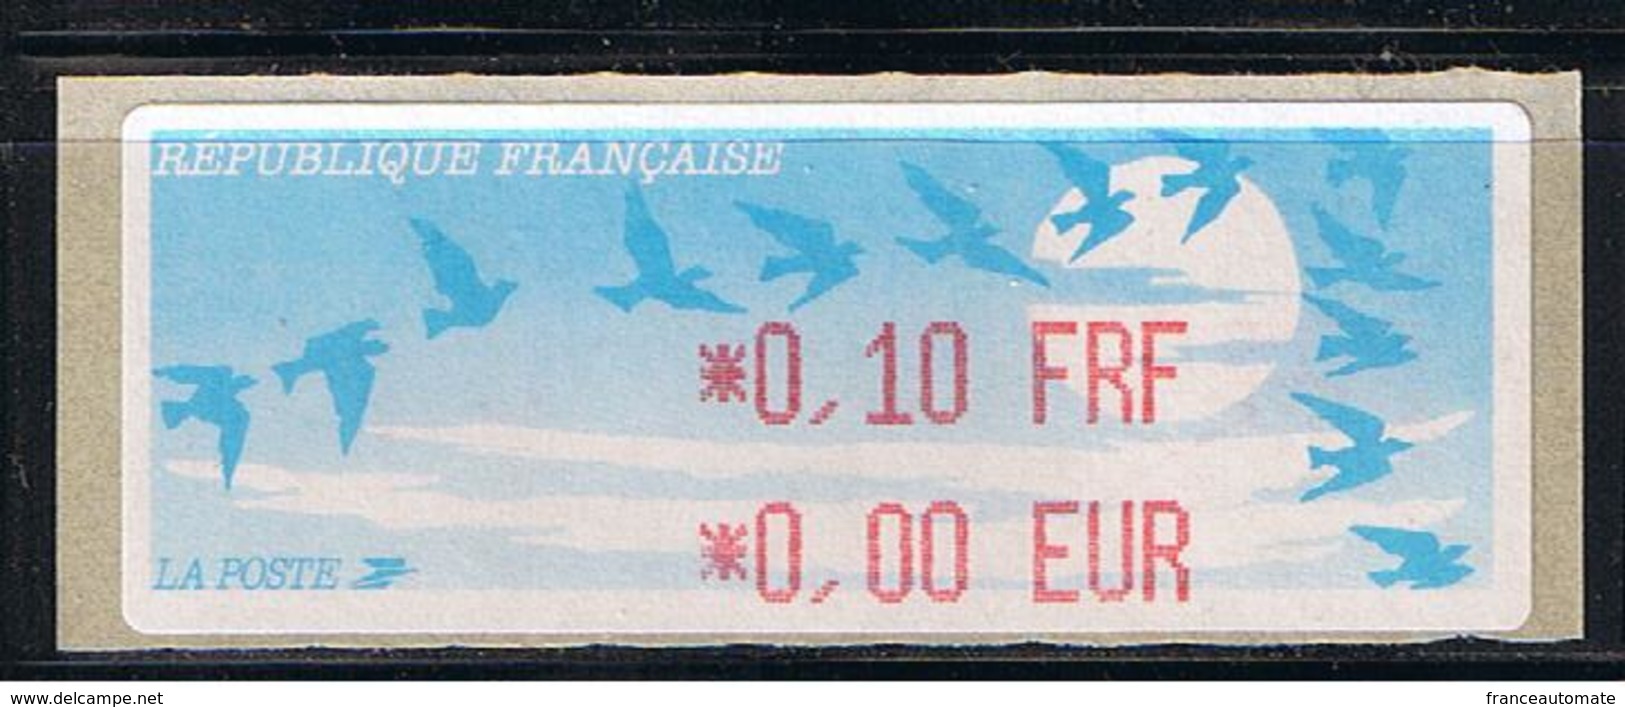 ATM, LISA1,0.10FRF/ 0.00EUR, VARIETE DU PROGRAMME AVEC PARITE FRF/EUR AU 1er JANVIER 1999, PAPIER JUBERT. - 1990 Type « Oiseaux De Jubert »